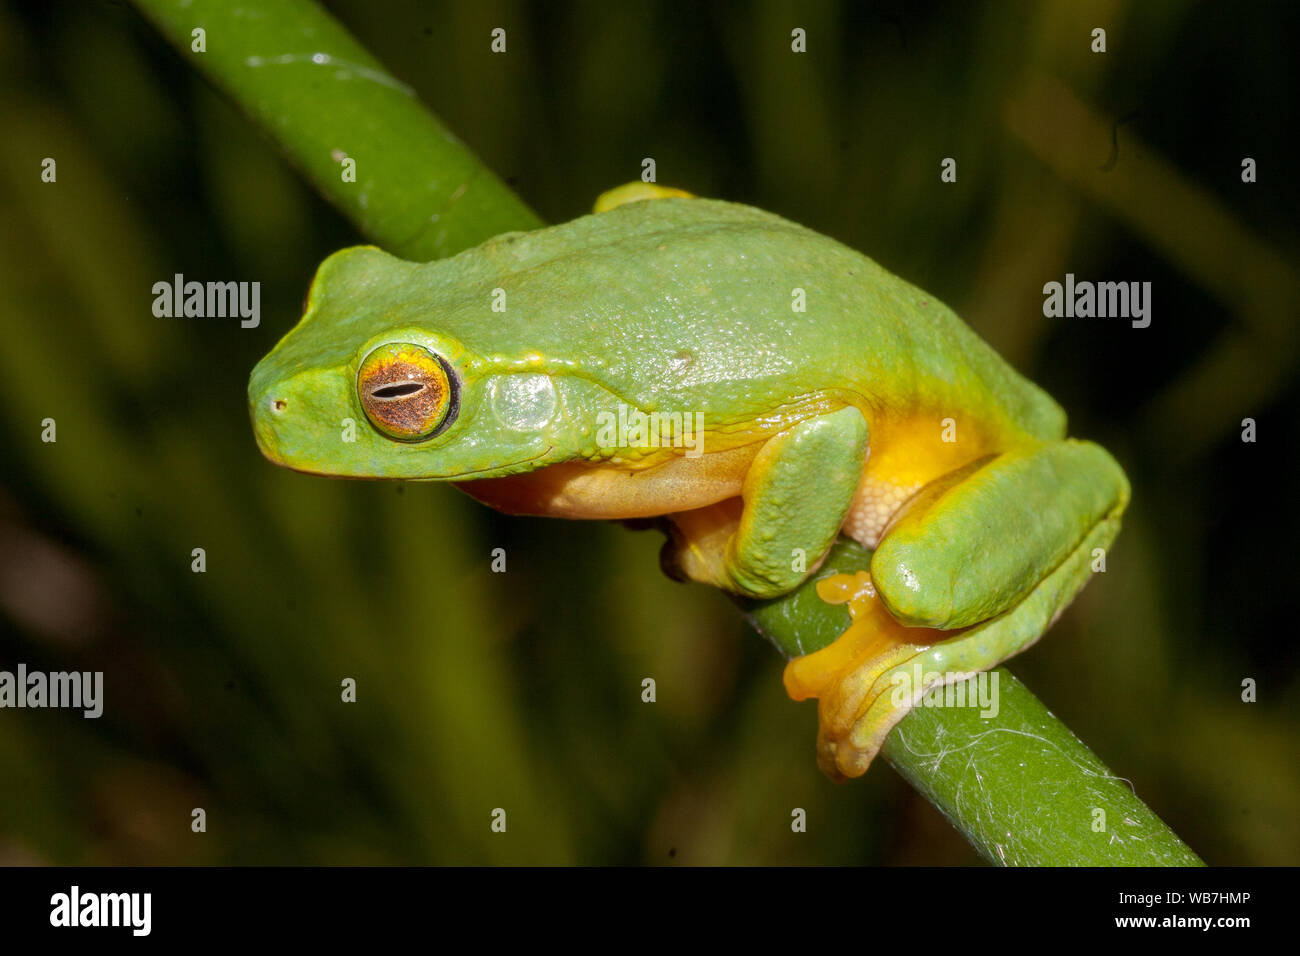 Australian Dainty Green Tree Frog Stock Photo